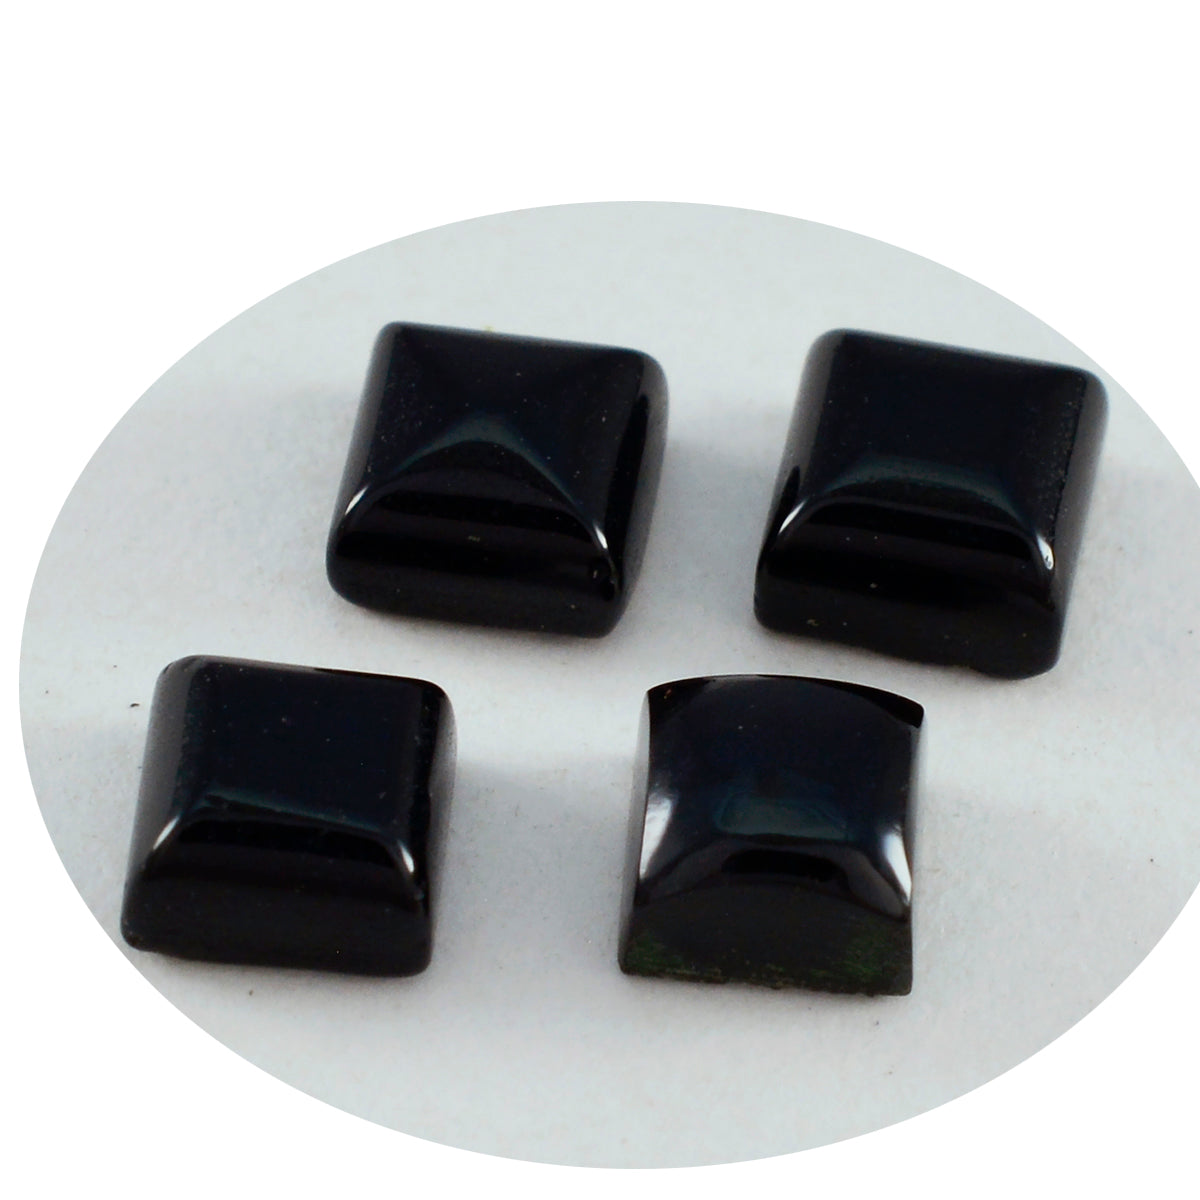 Riyogems 1PC Black Onyx Cabochon 9x9 mm Square Shape fantastic Quality Loose Stone